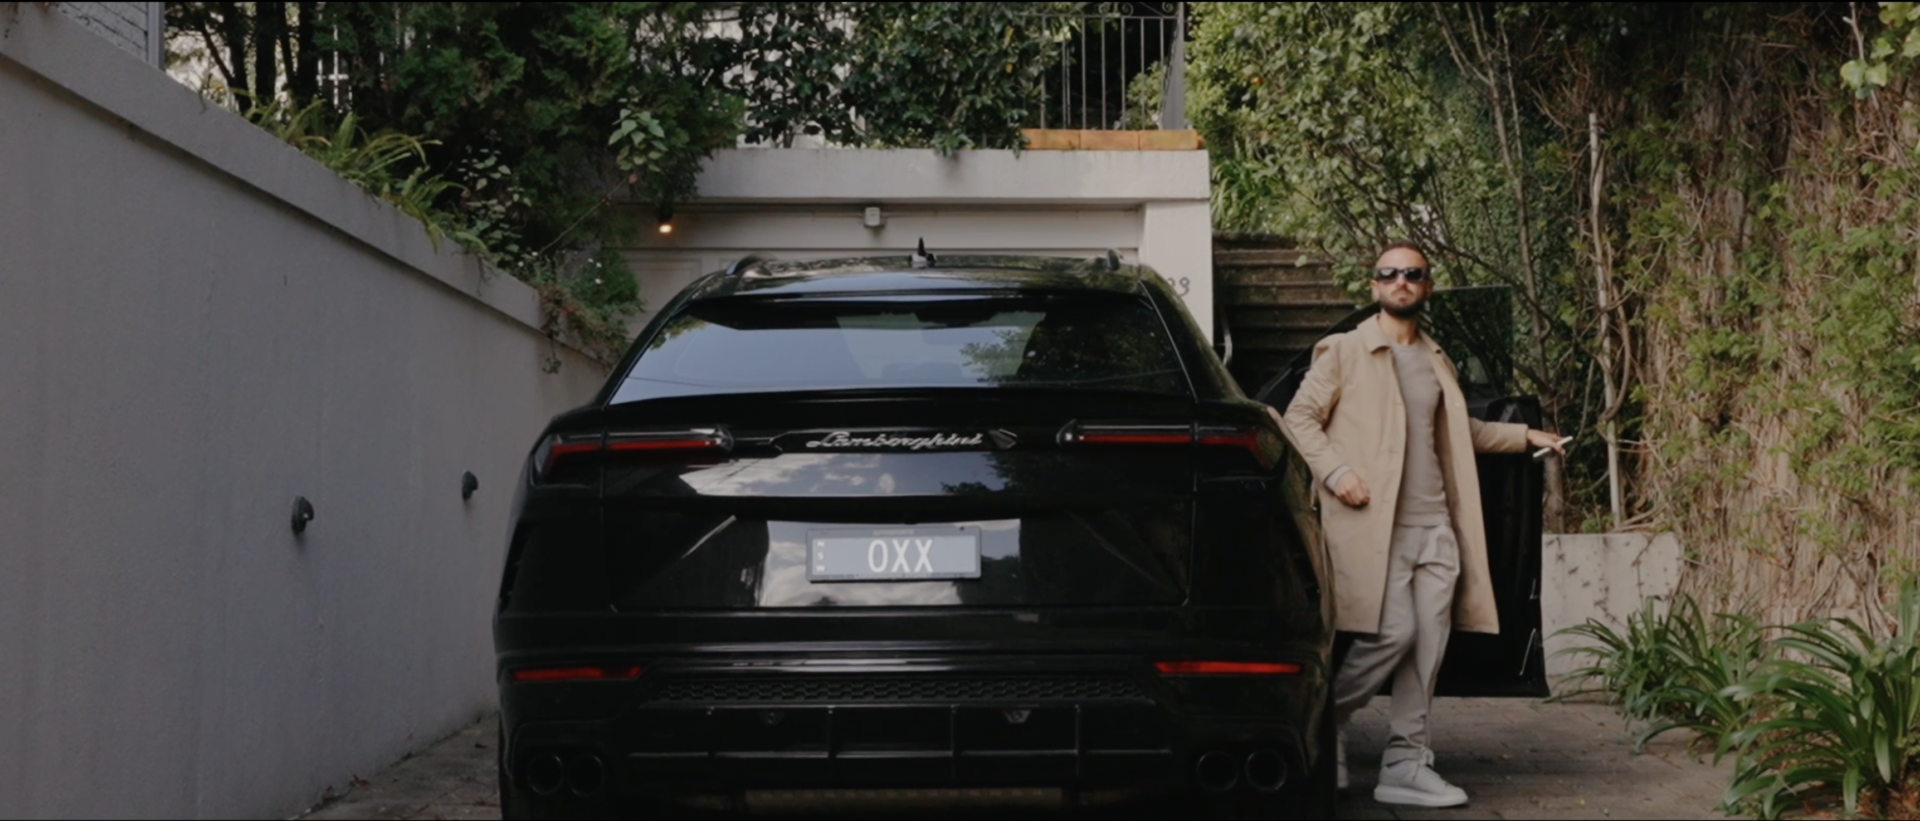 Lamborghini Urus 4wd in vaucluse mansion